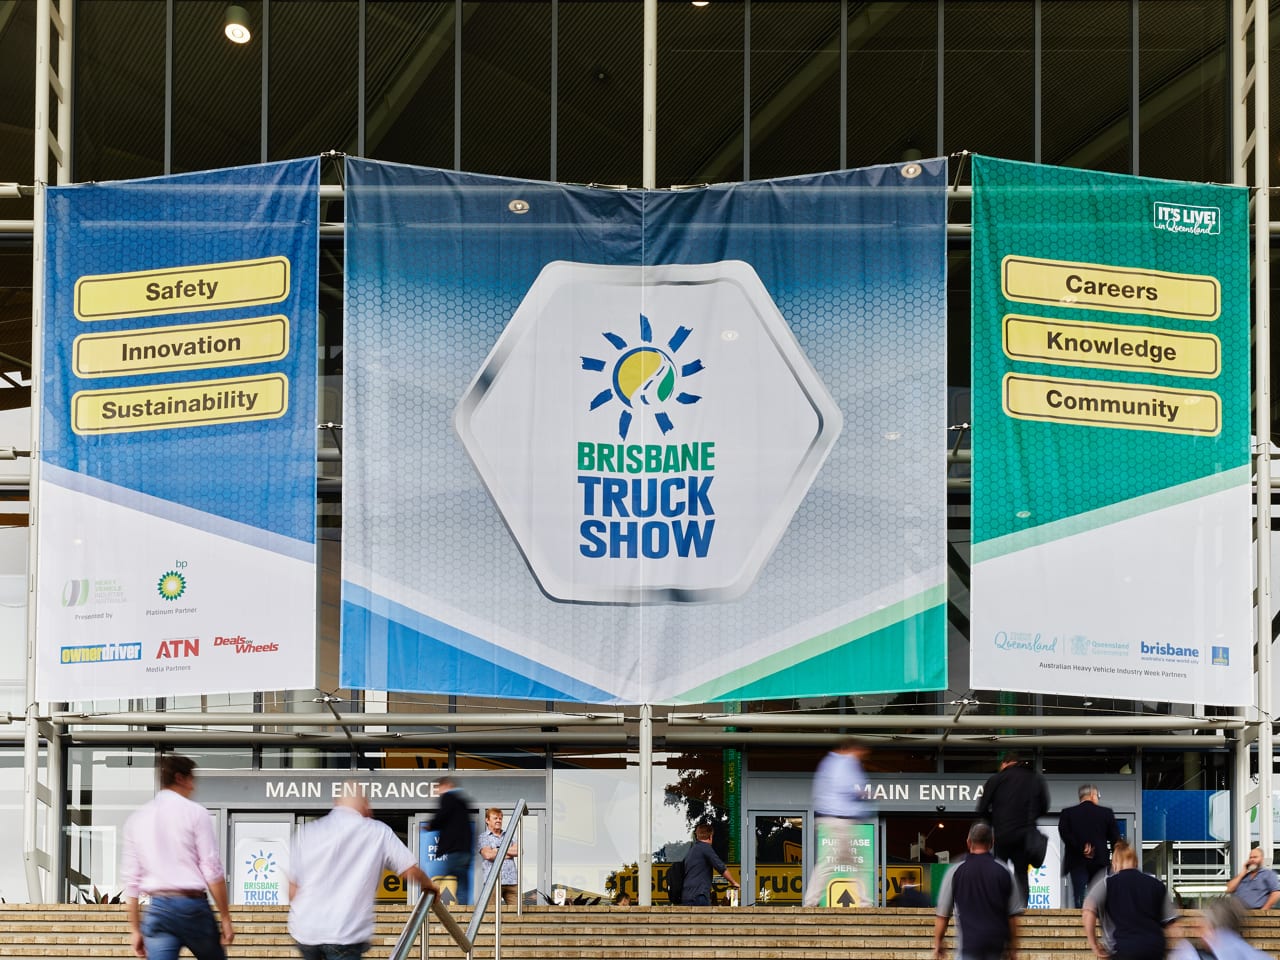 Brisbane Truck Show 2019